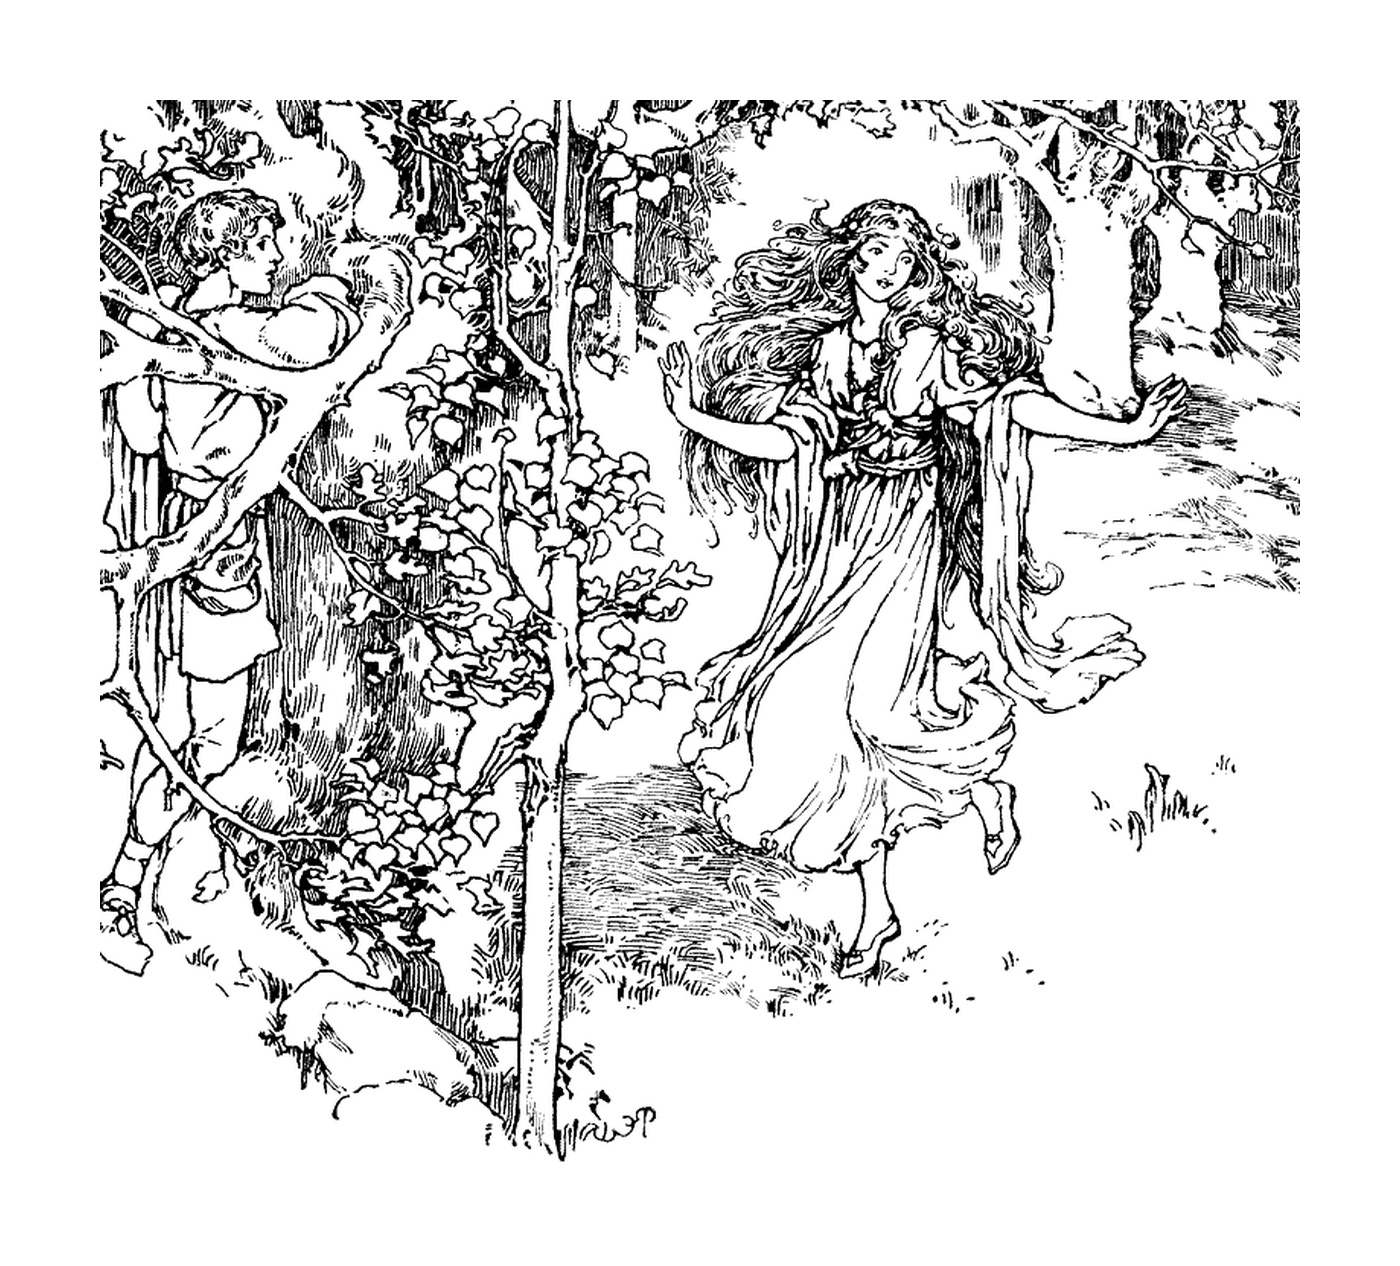  बाग में एक स्त्री और पुरुष 